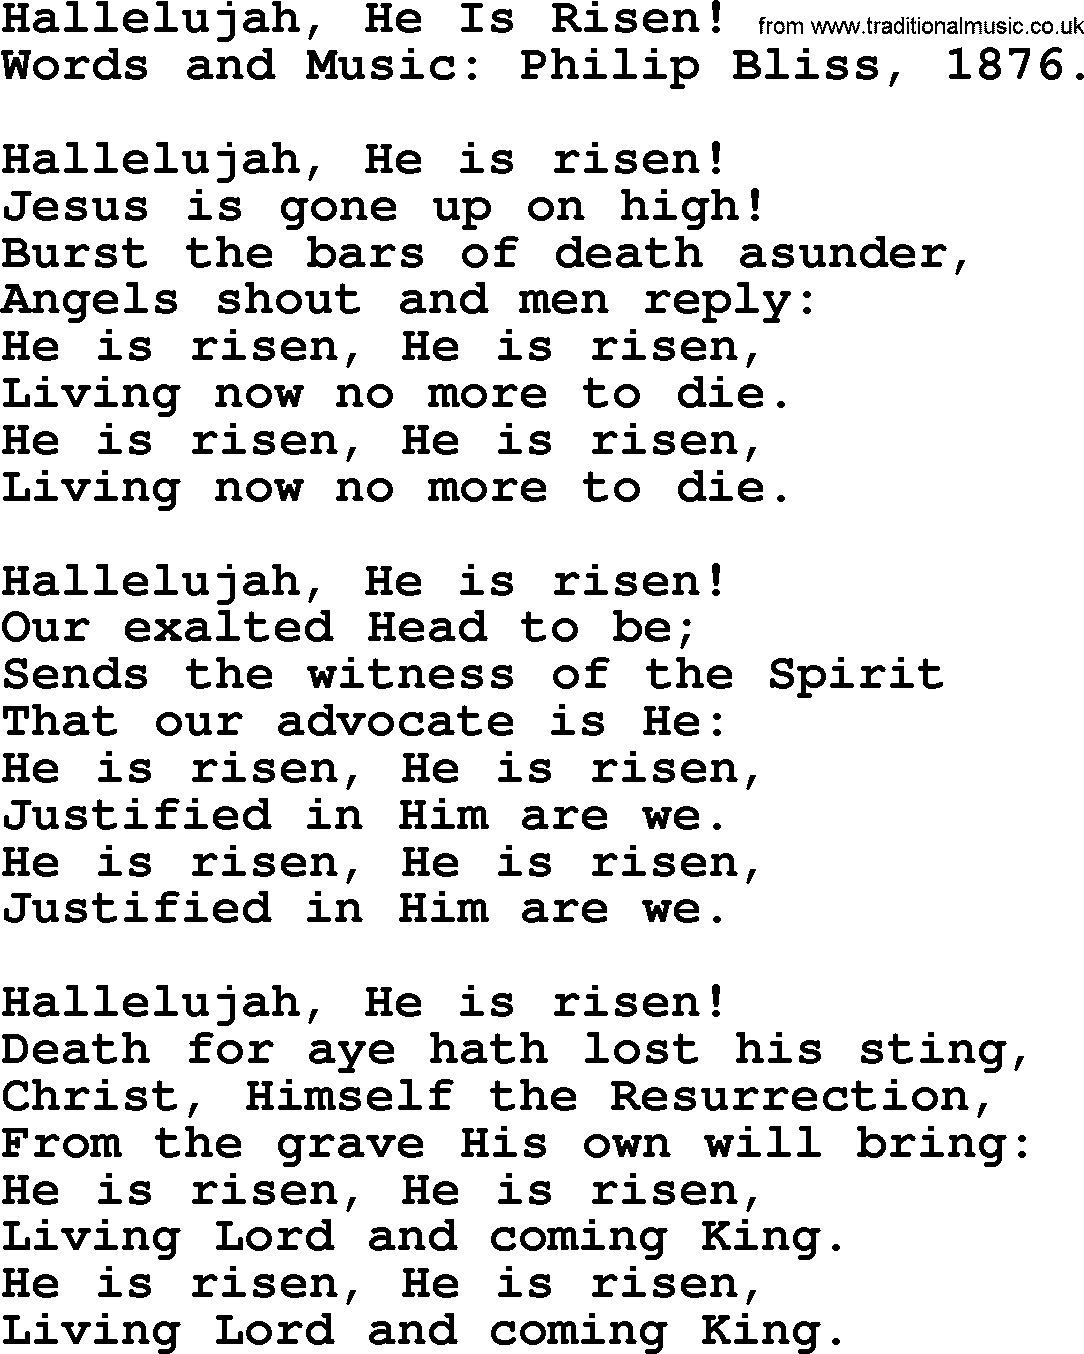 Philip Bliss Song: Hallelujah, He Is Risen!, lyrics